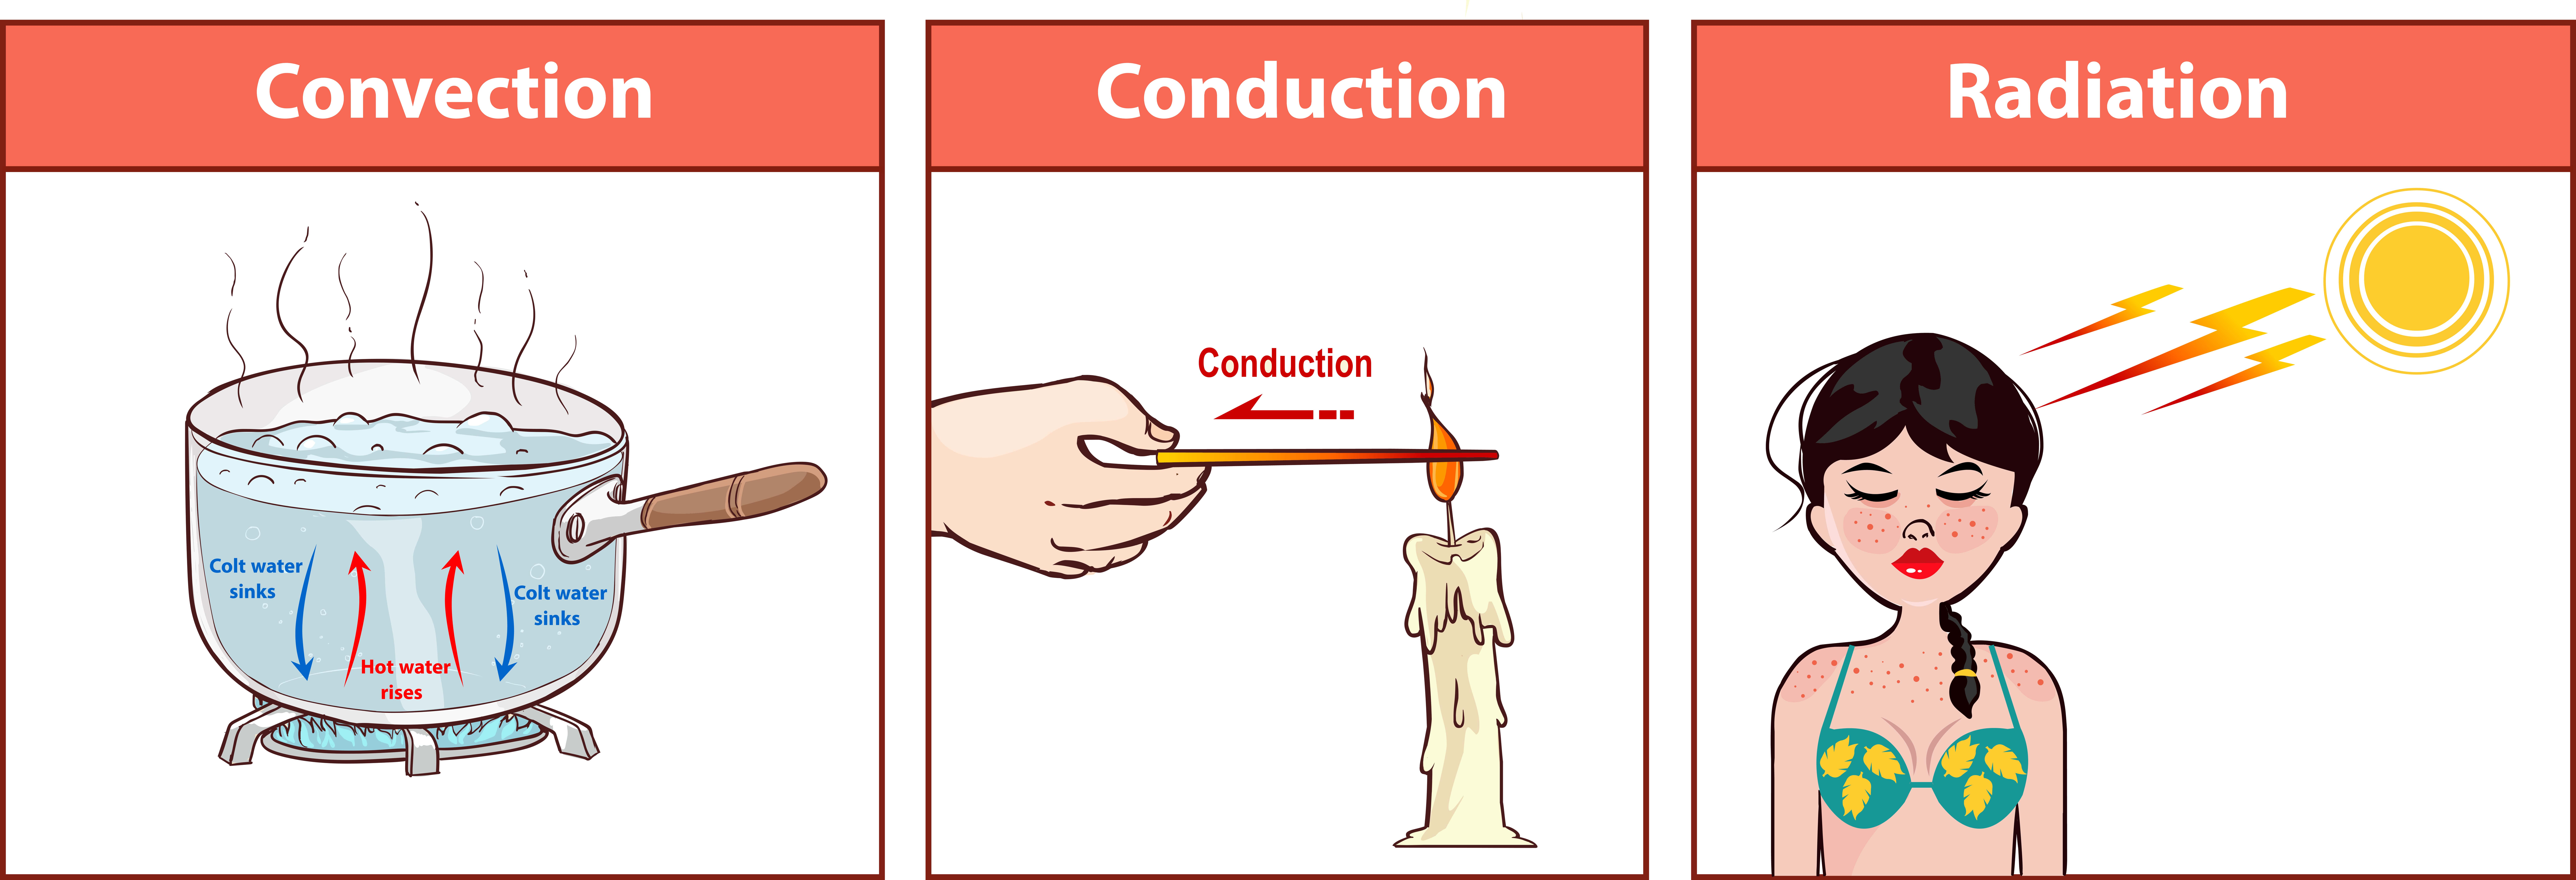 conduction vs convection